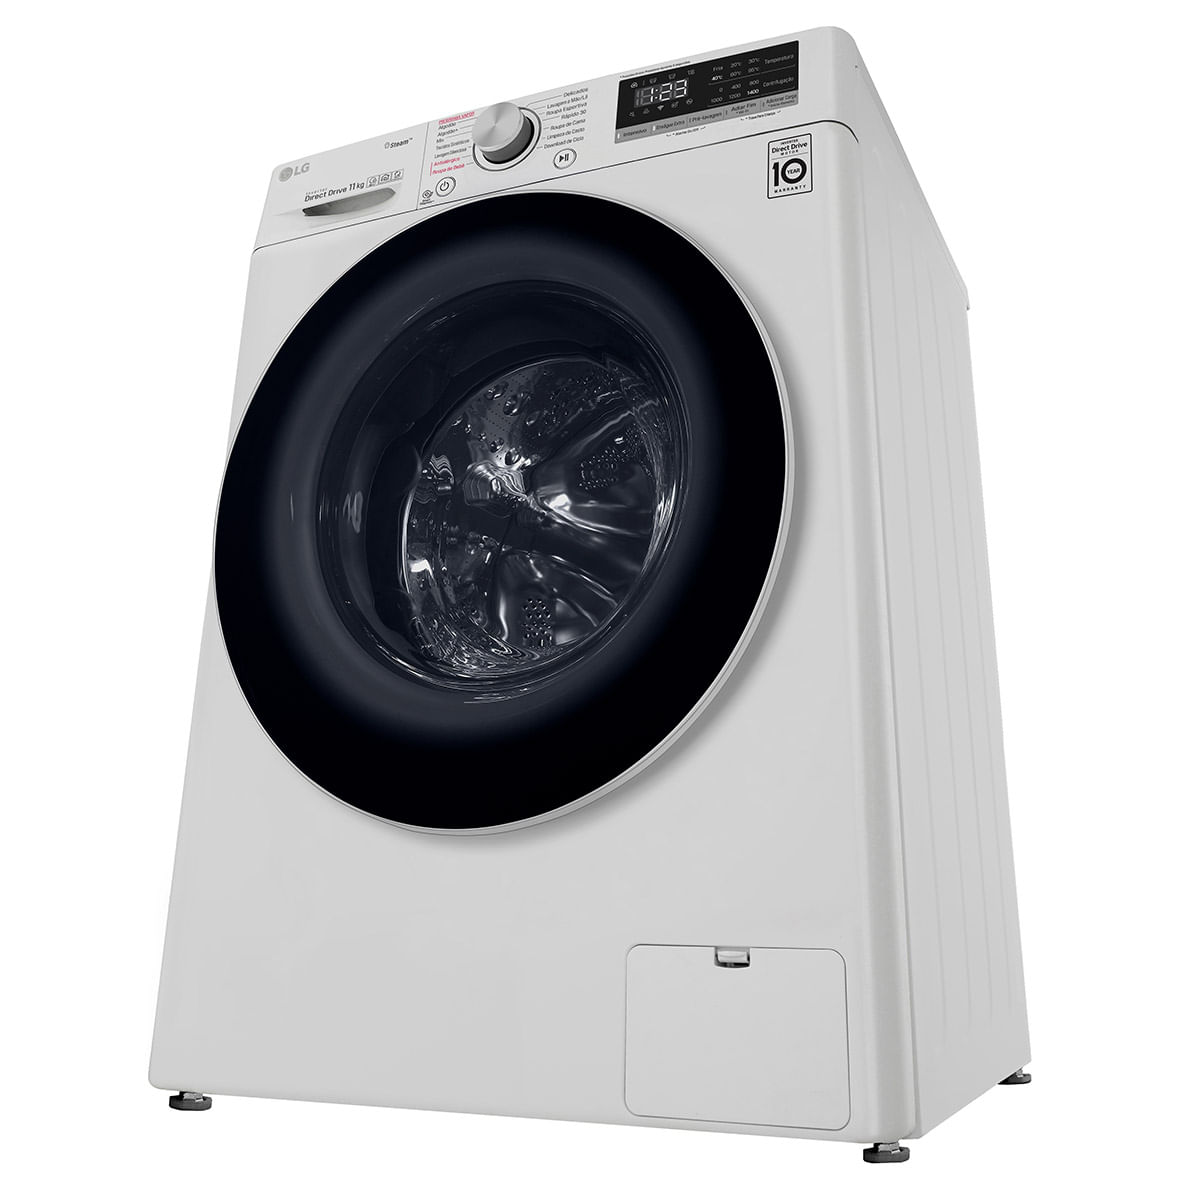 lavadora-de-roupa-smart-lg-vc5-11kg-com-inteligencia-artificial-aidd-fv3011wg4-branca-110v-5.jpg